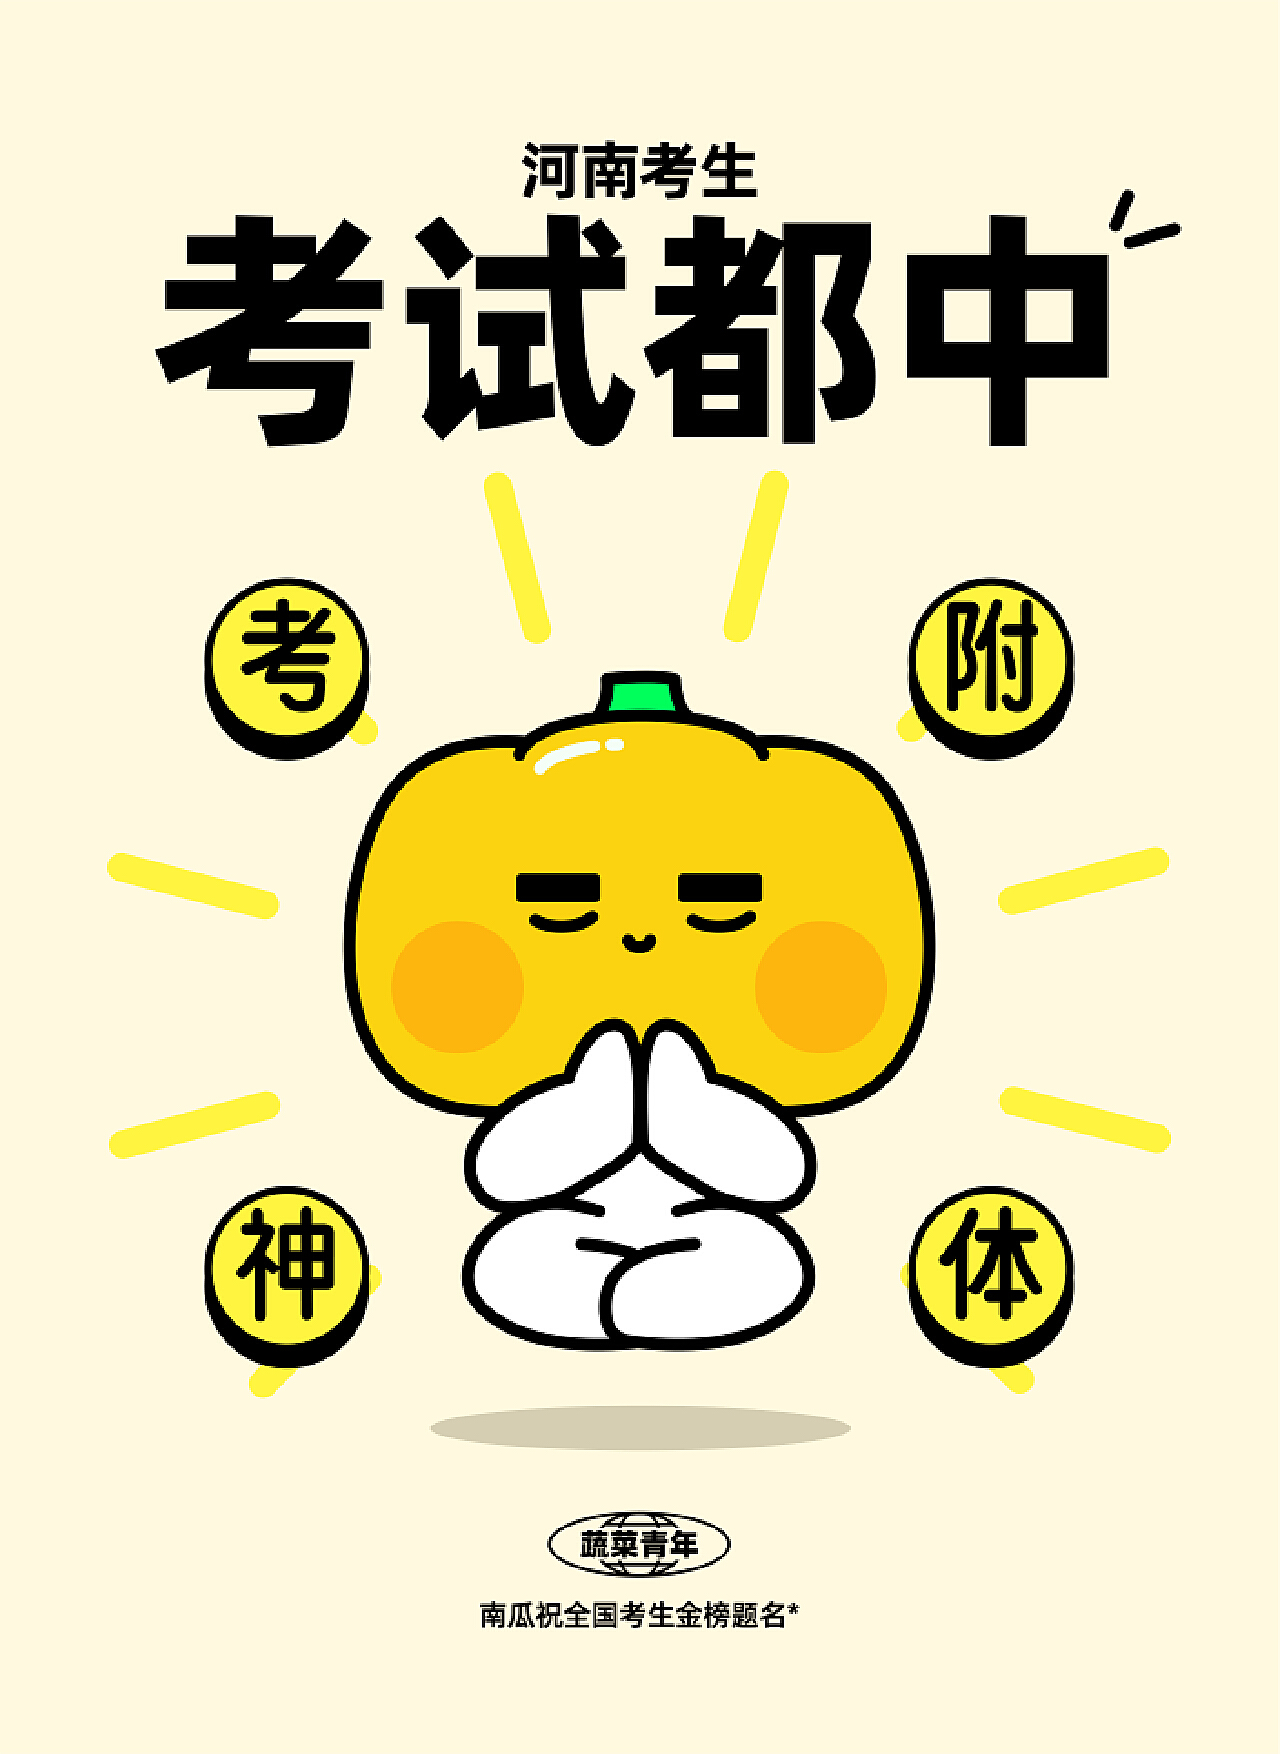 红黄色考神相助考研必过手绘考研教育分享中文微信朋友圈 - 模板 - Canva可画